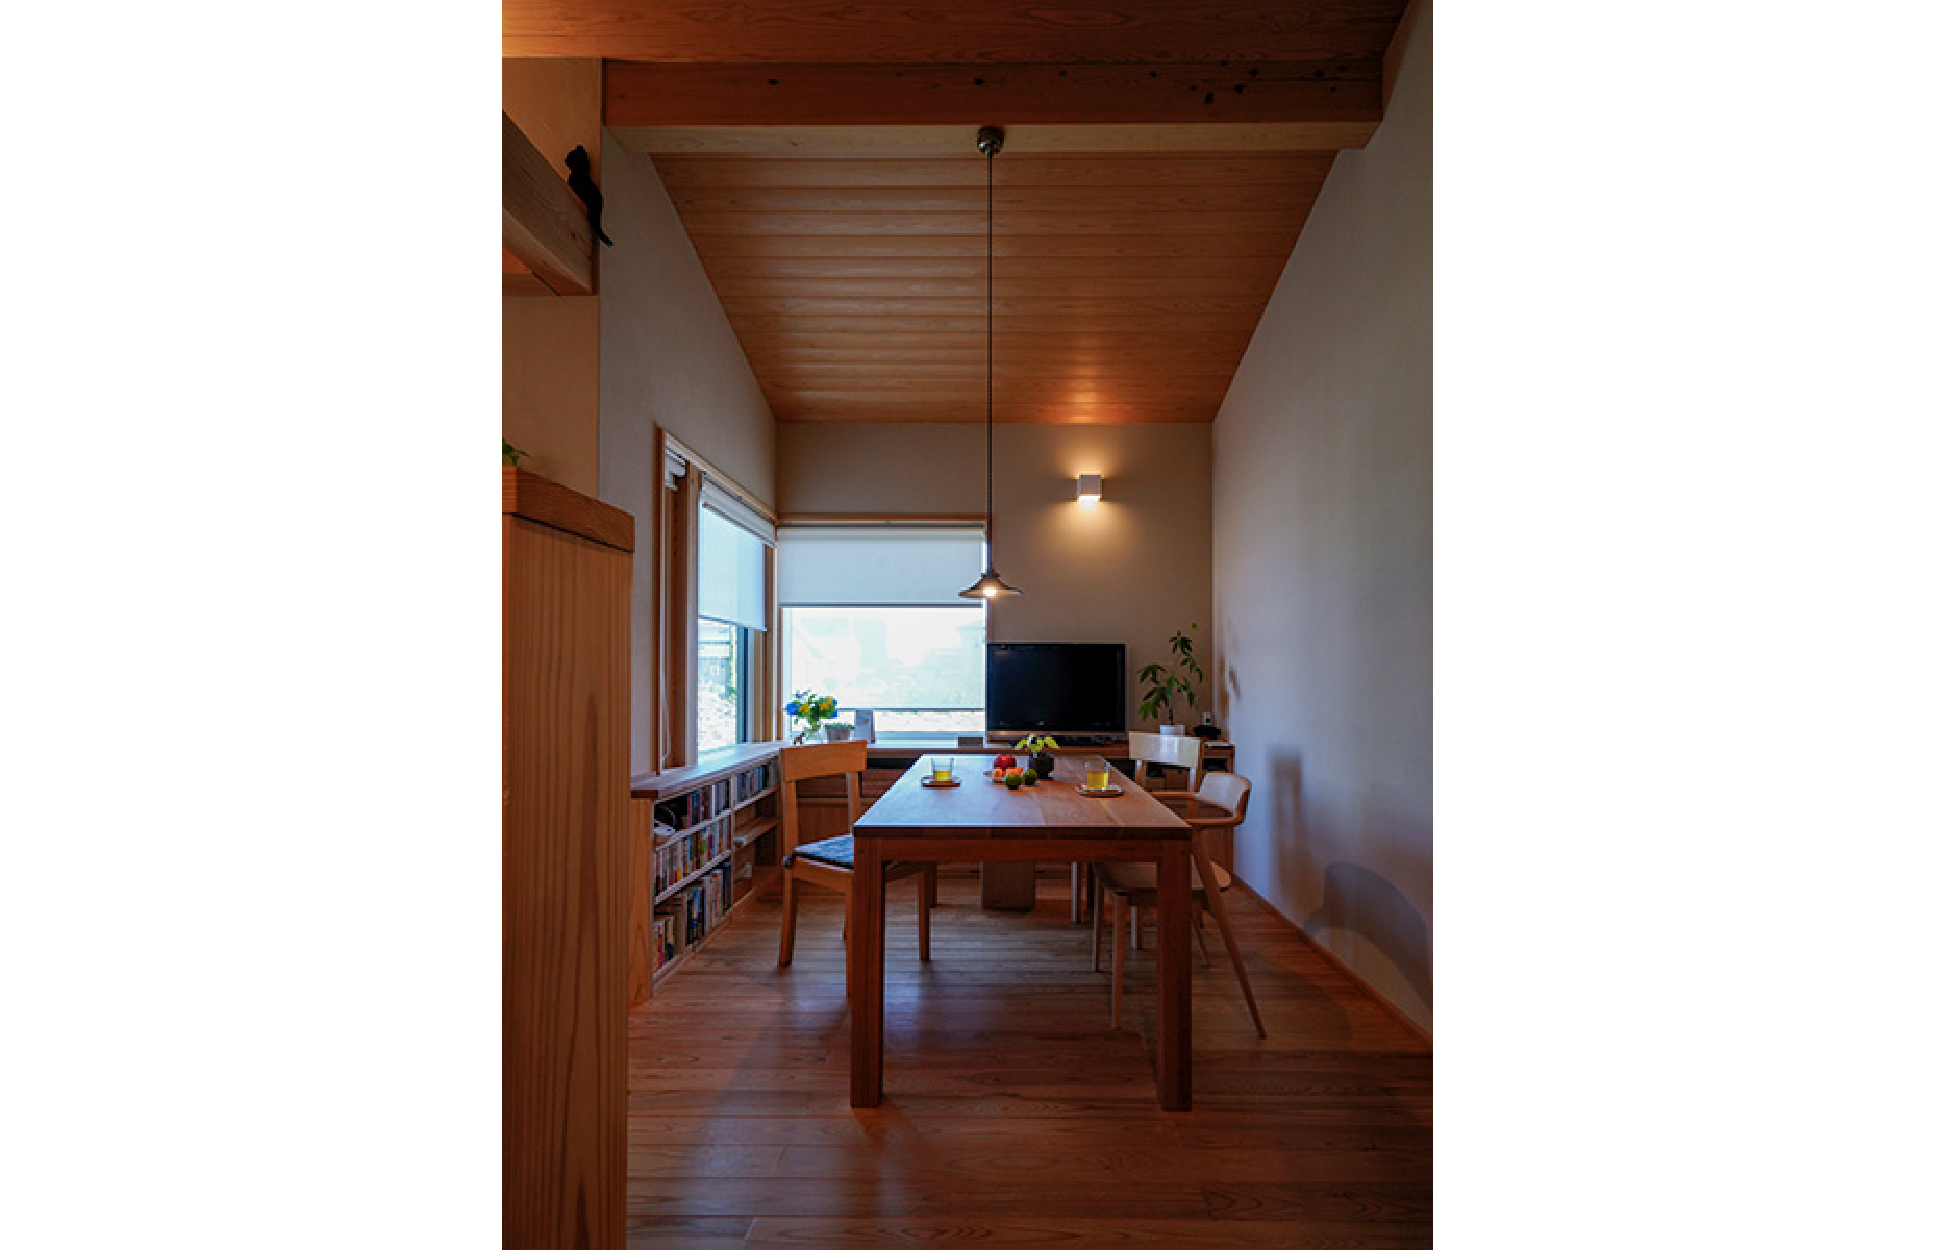 群馬県邑楽郡邑楽町に家の中心に薪ストーブのある暖かい注文住宅の”木の家”が建ちました。